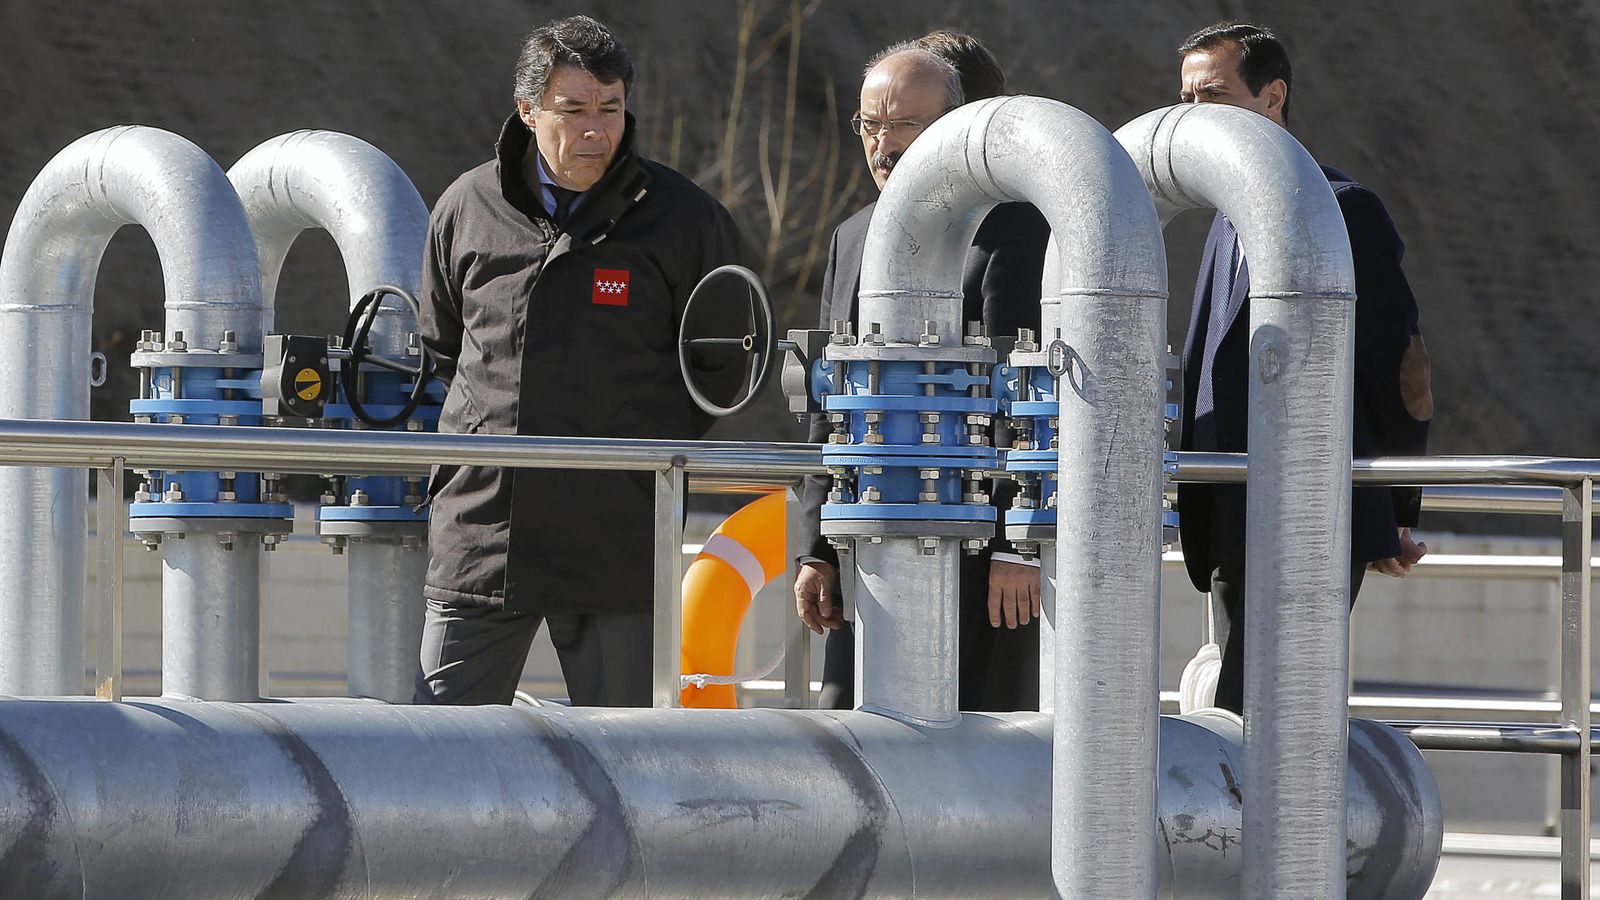 Foto: Ignacio González, expresidente de la Comunidad de Madrid, visitando instalaciones del Canal de Isabel II en marzo de 2014.